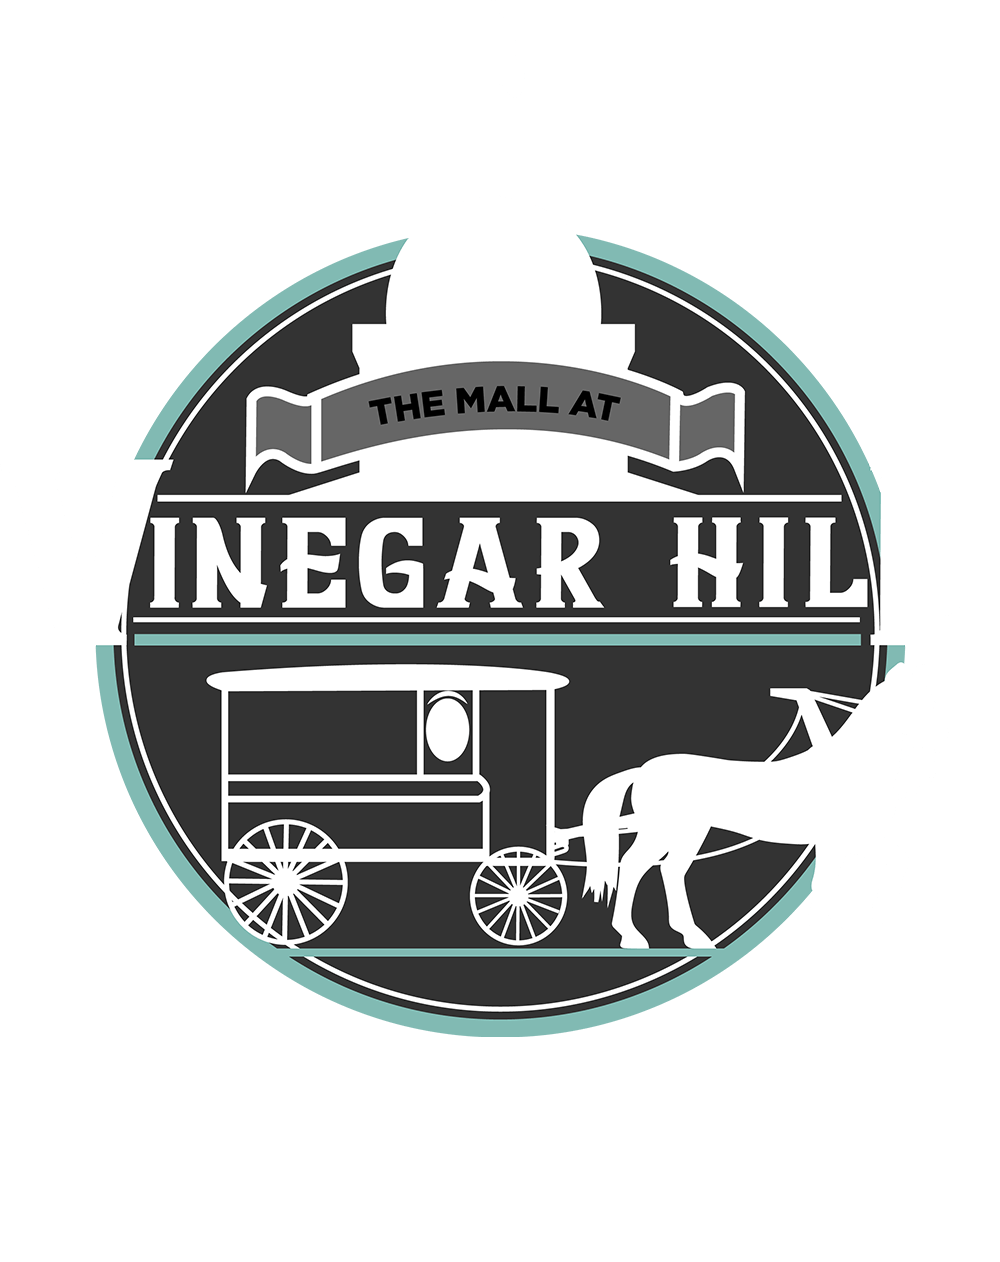 Vinegar Hill Mall logo